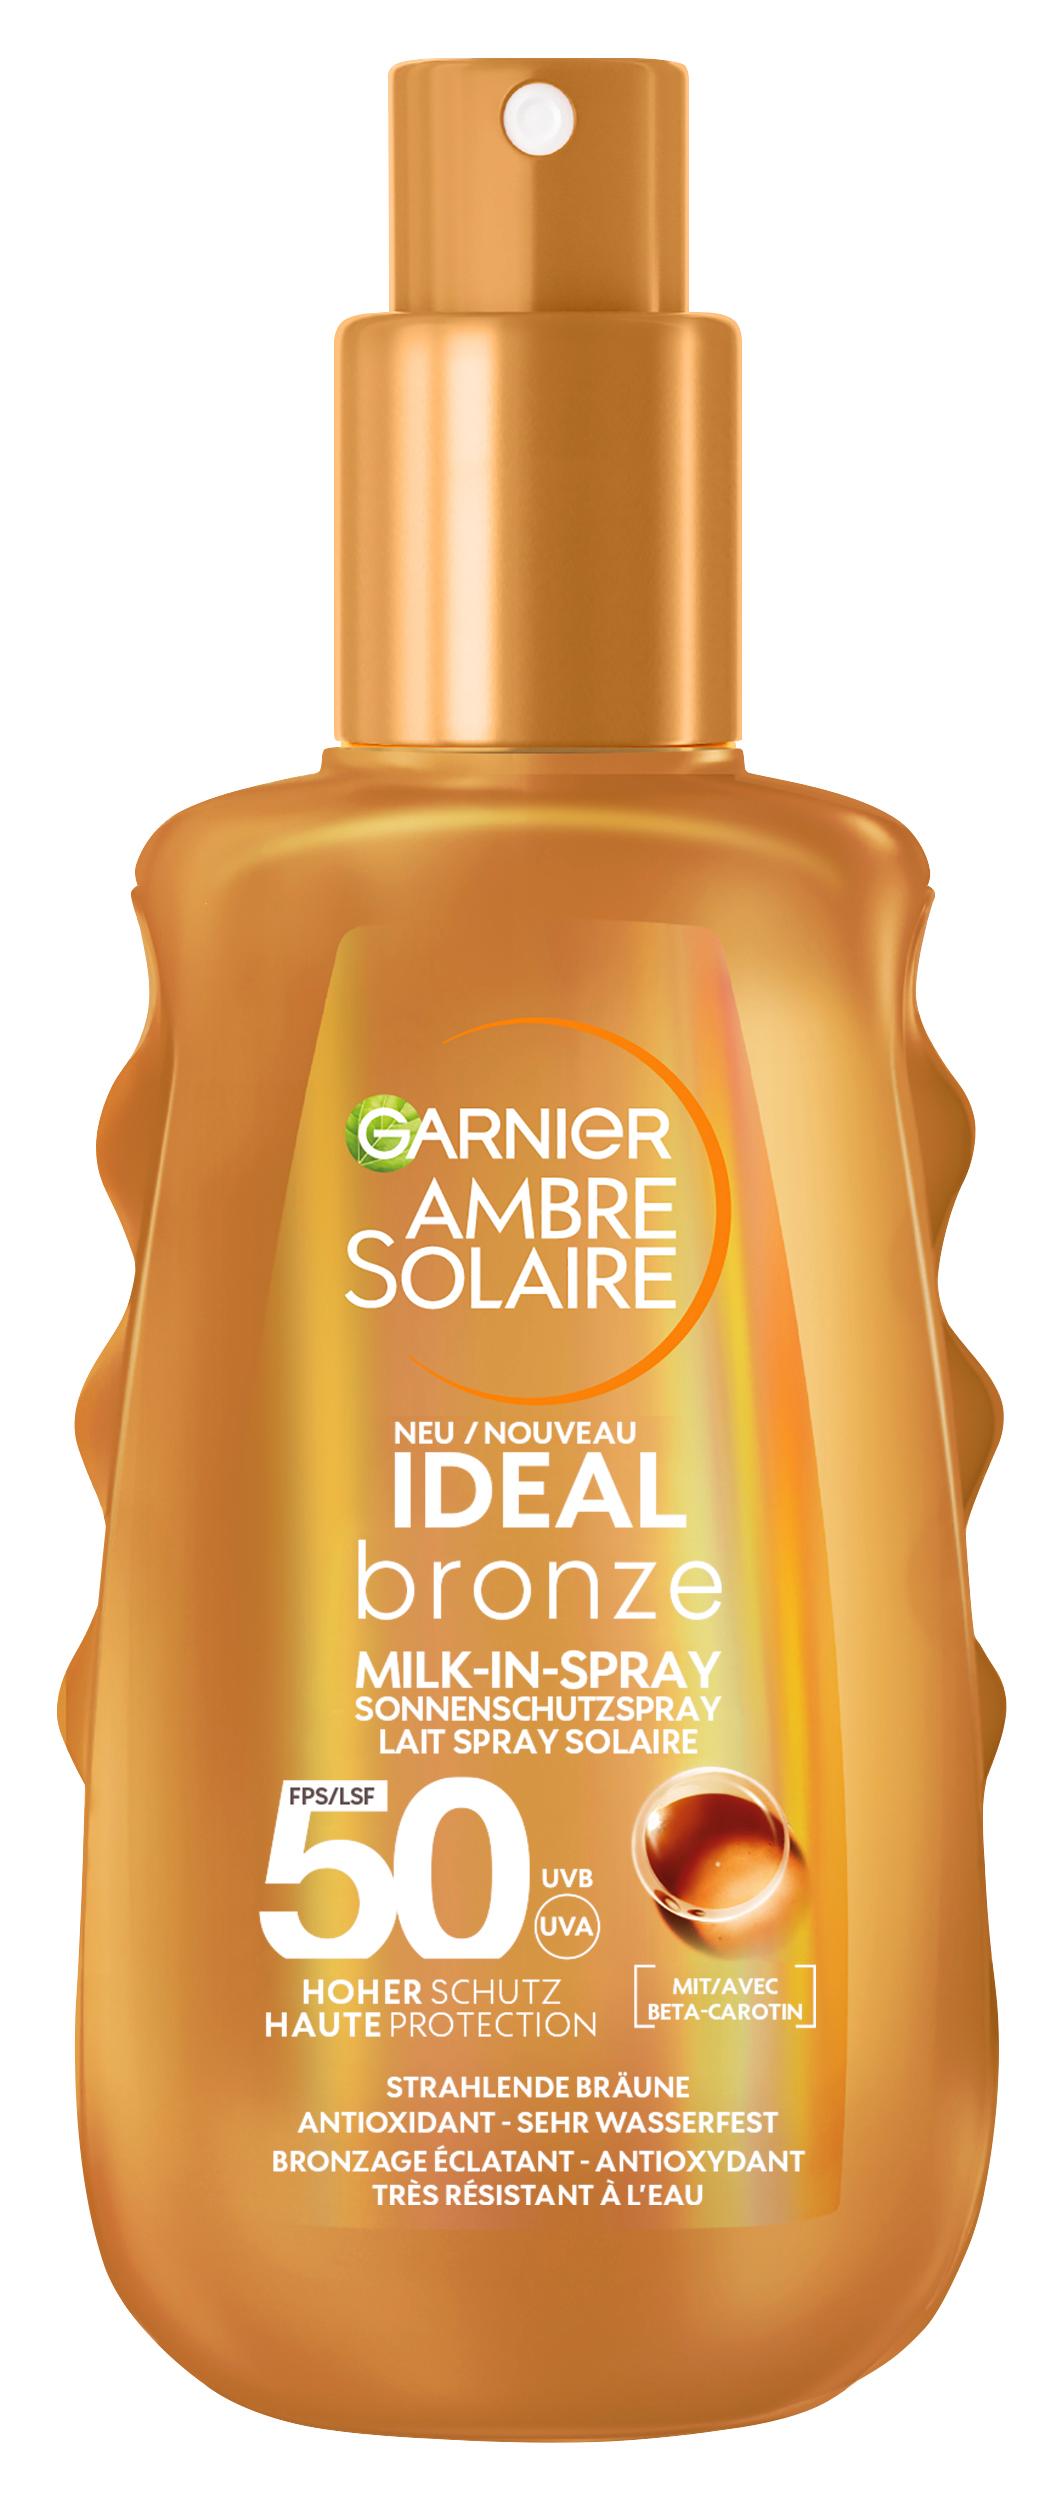 Ambre Solaire - Ideal Bronze Milk-in-Spray Sonnenschutzspray mit LSF 50